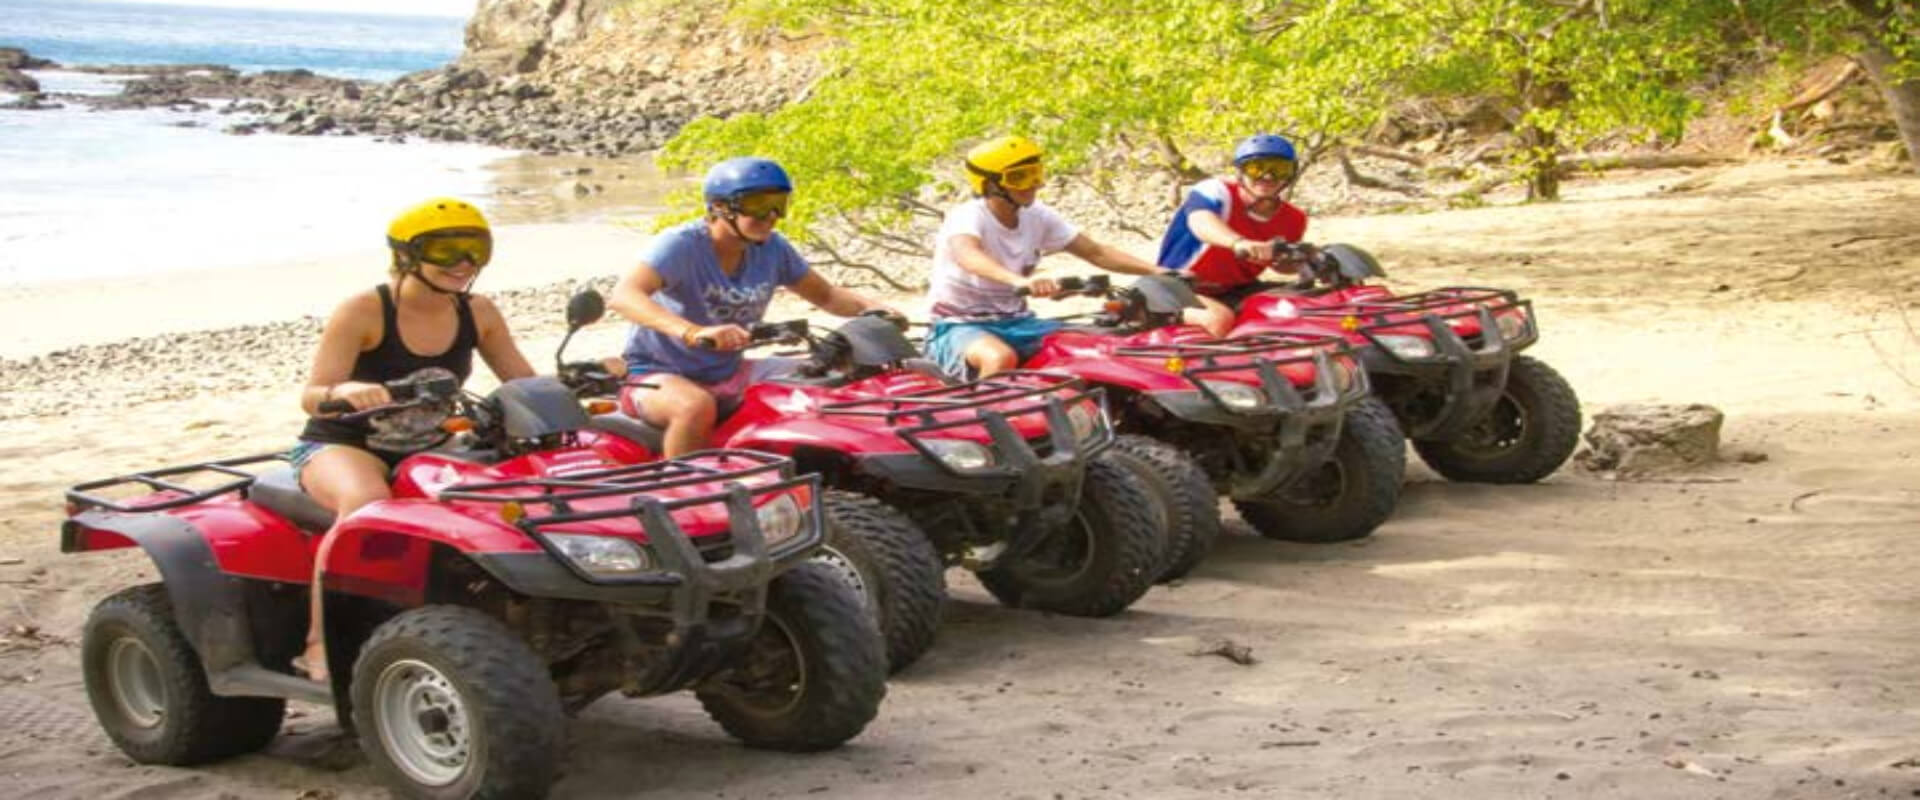 Aventura ATV en Diamante Adventure Park | Costa Rica Jade Tours